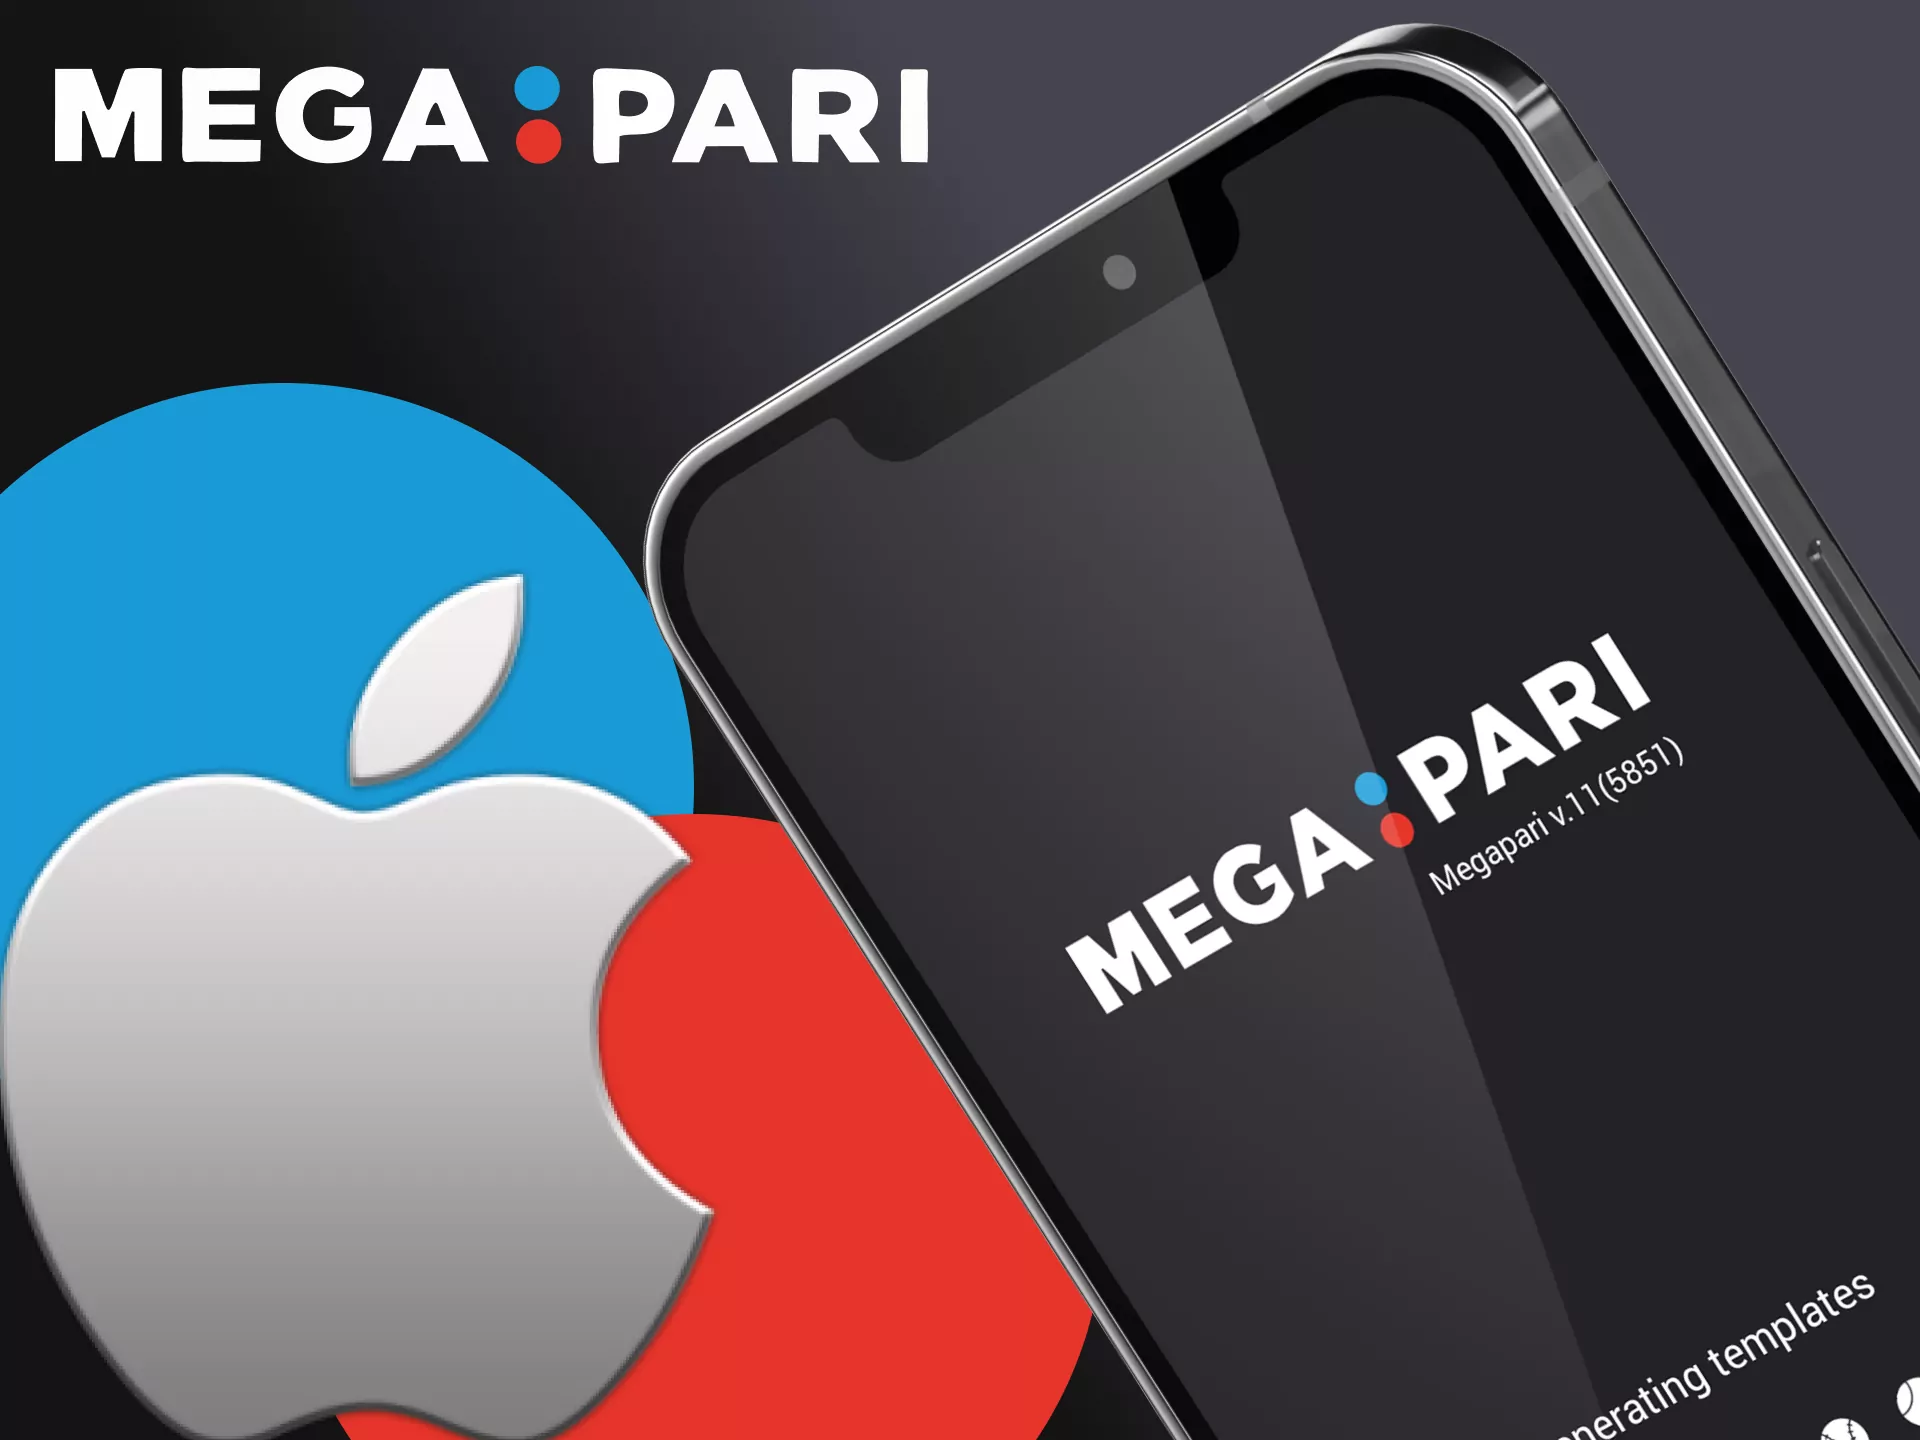 Use the Megapari app on your iOS device.